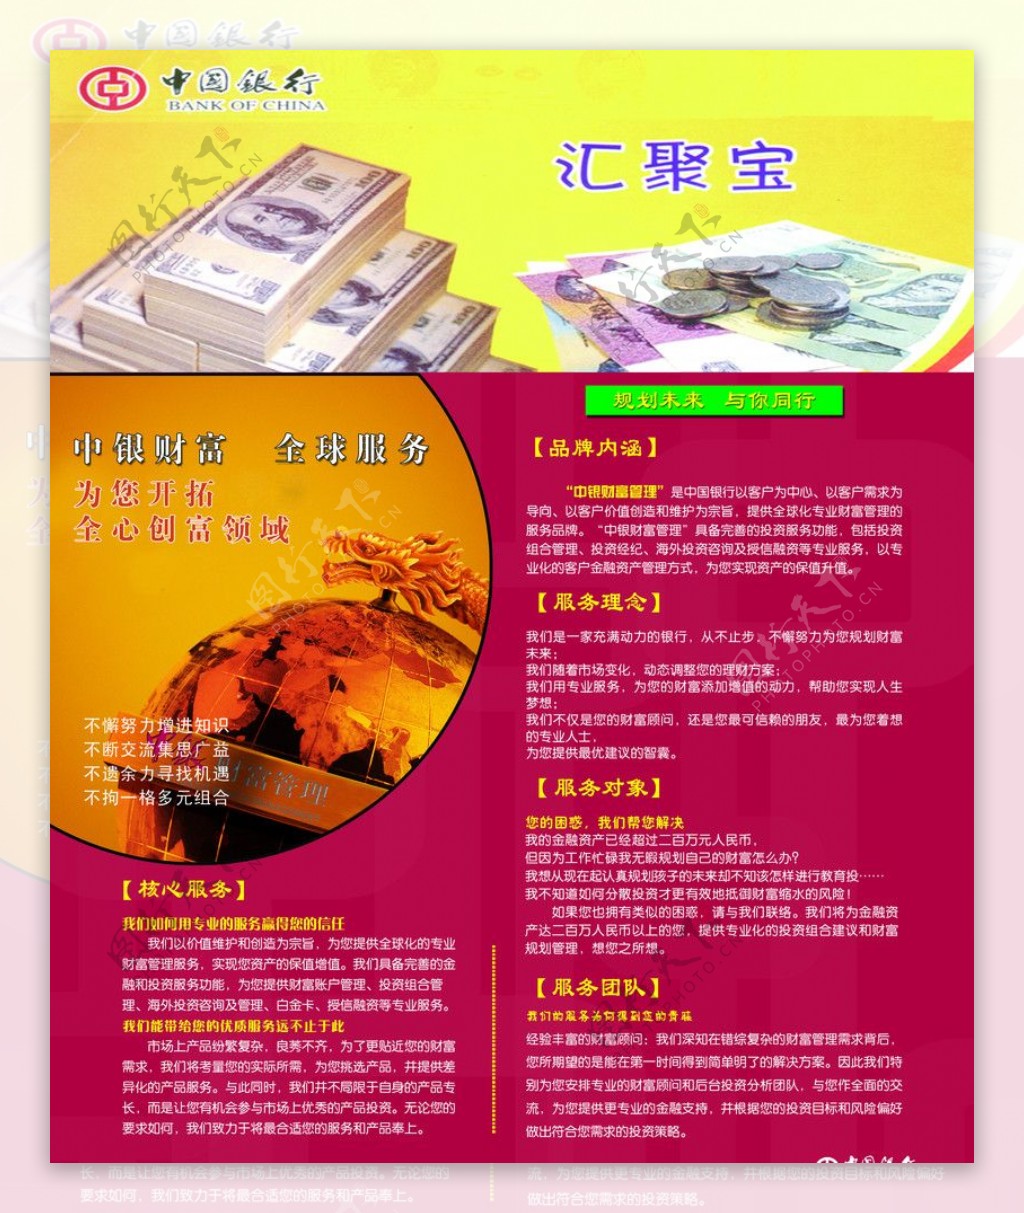 中国银行宣传样图片